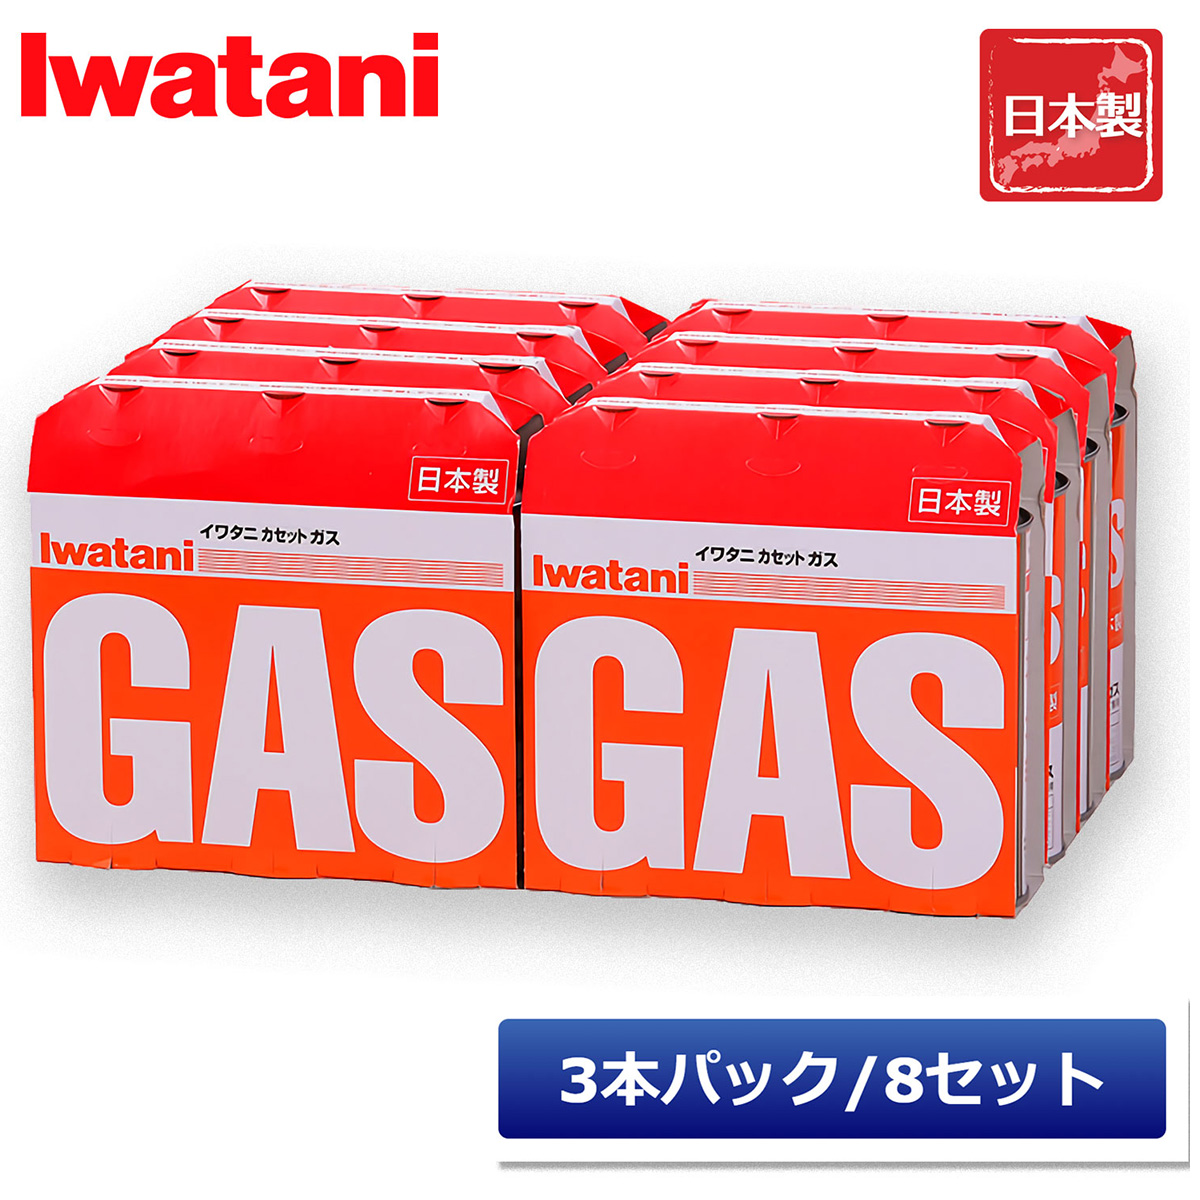 イワタニ カセットガス オレンジ カセットボンベ 24本セット（3本パック×8）  iwatani